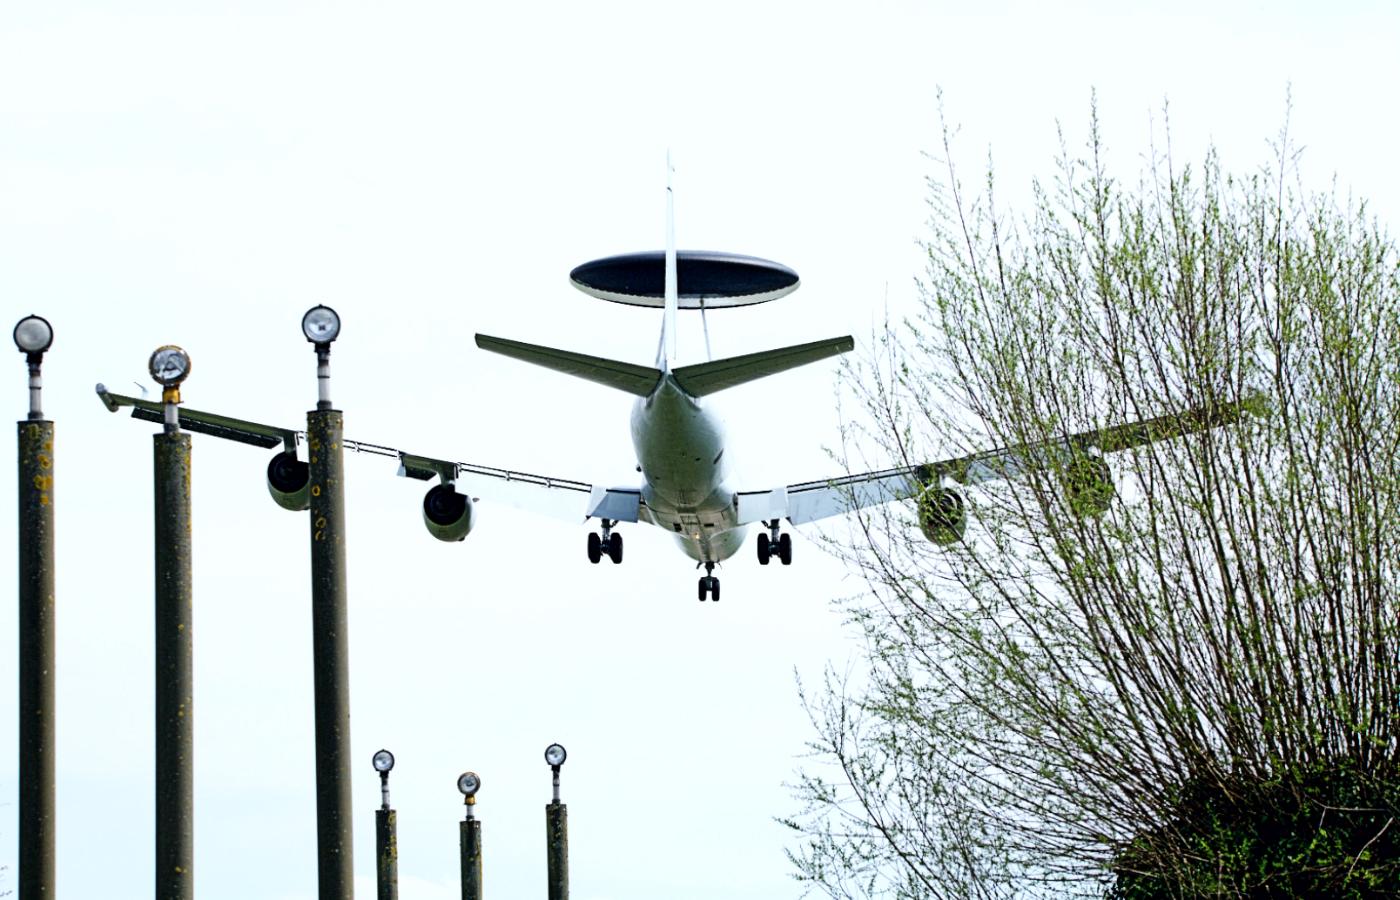 E-3 AWACS to amerykański samolot opracowany w latach 70., wprowadzony do użycia w latach 80. i od tamtej pory wielokrotnie modernizowany. Ma tę zaletę, że w przeciwieństwie do radarów umieszczonych na ziemi widzi z daleka samoloty, śmigłowce i drony na wszystkich, w tym skrajnie małych wysokościach.